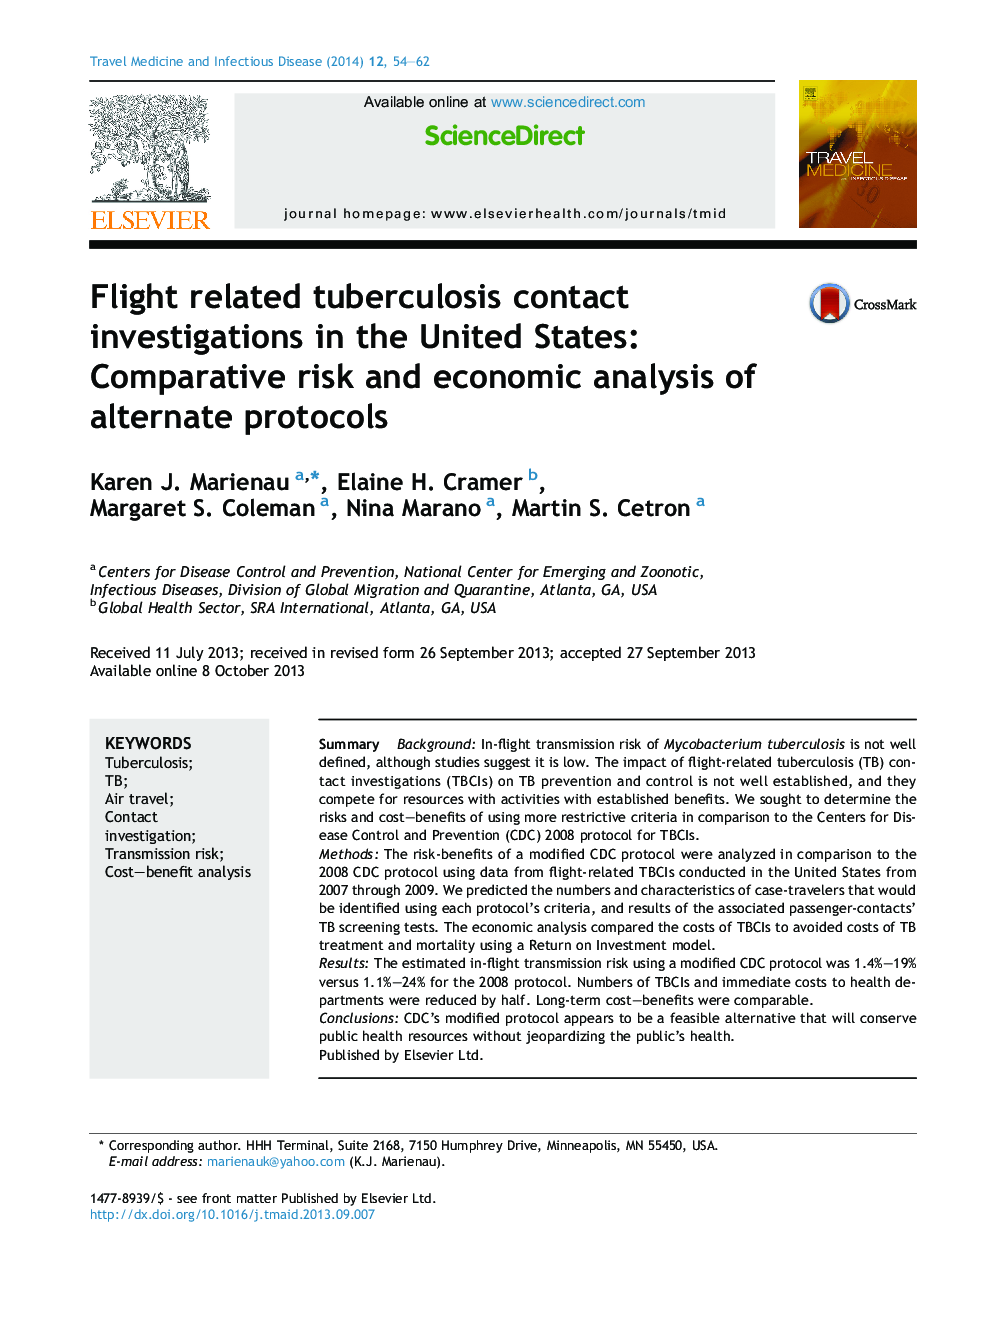 تحقیقات مربوط به تماس با سل در ایالات متحده: ریسک مقایسه و تحلیل اقتصادی پروتکل های متناوب 